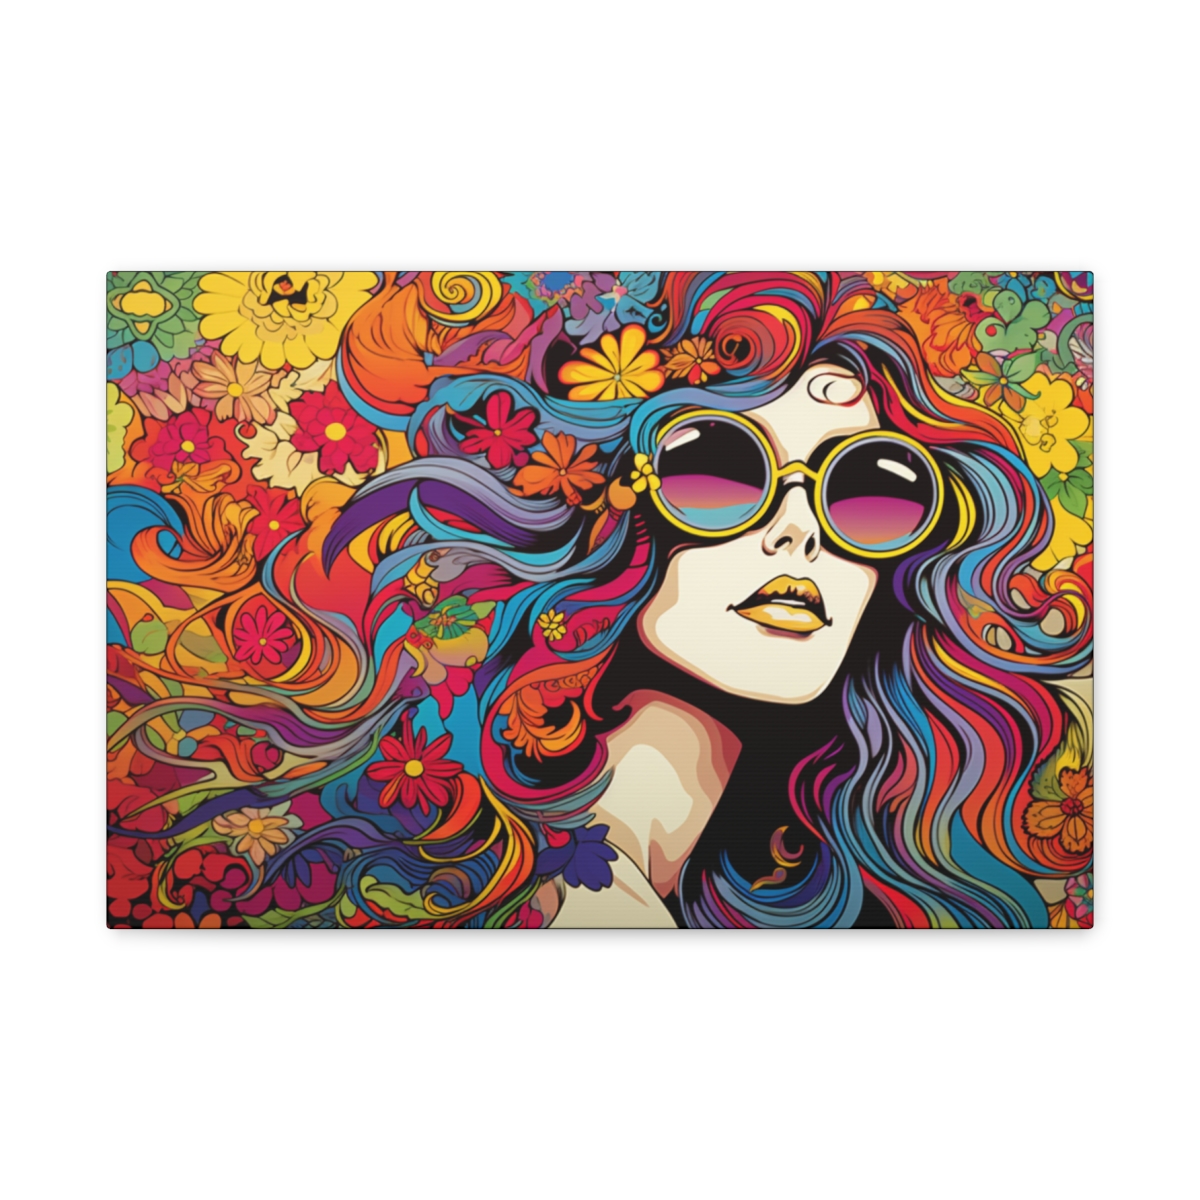 Hippie Art Art Canvas Print: Girls Power